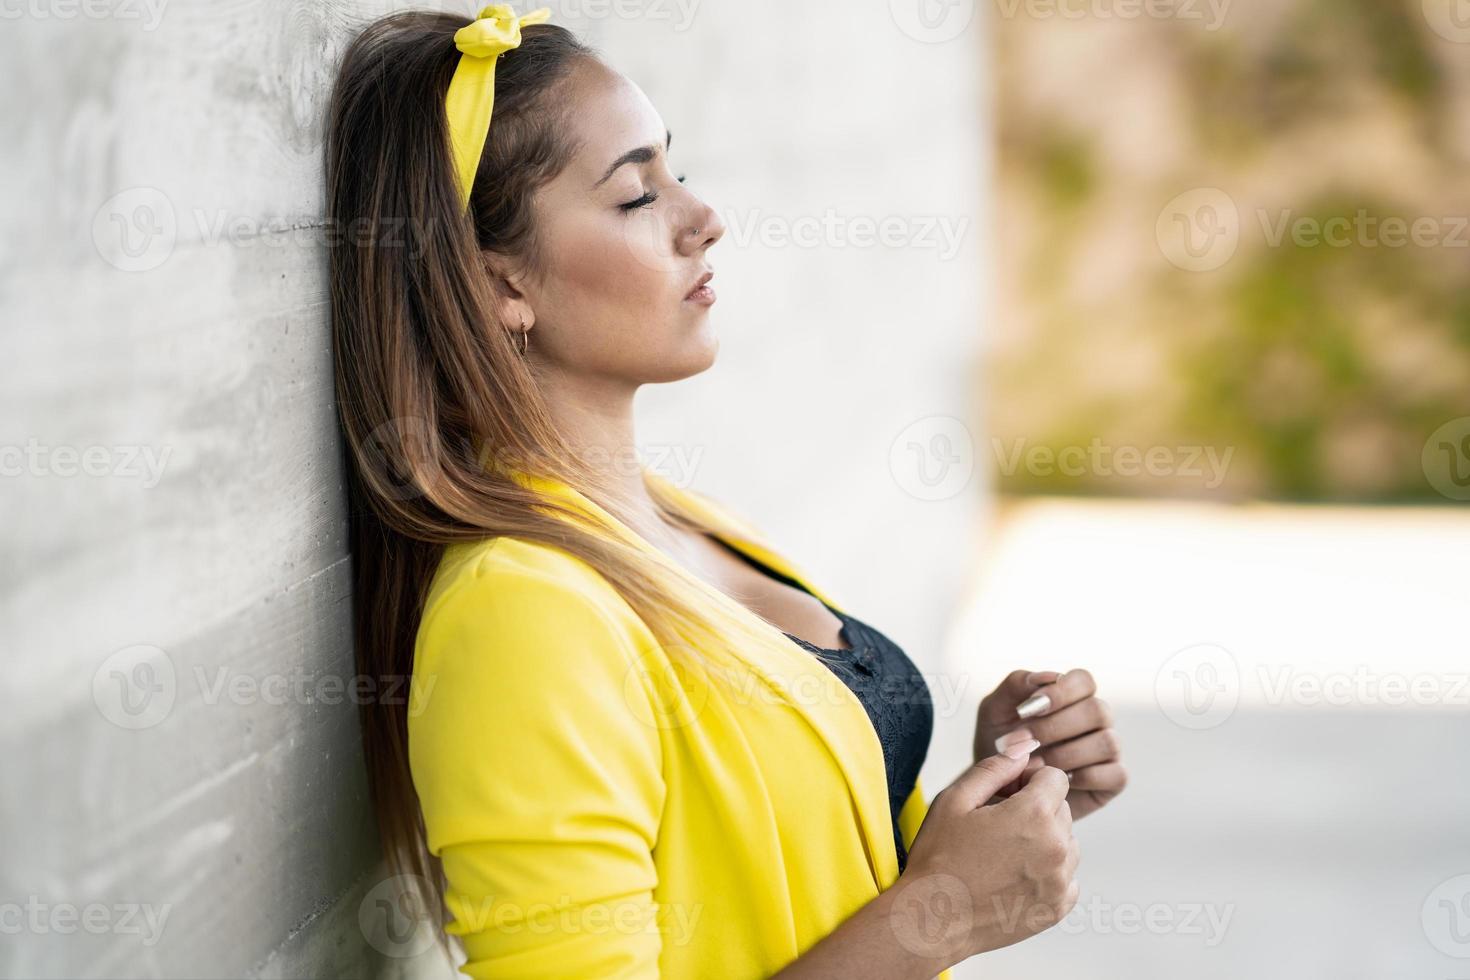 jovem vestindo uma jaqueta amarela e bandana foto